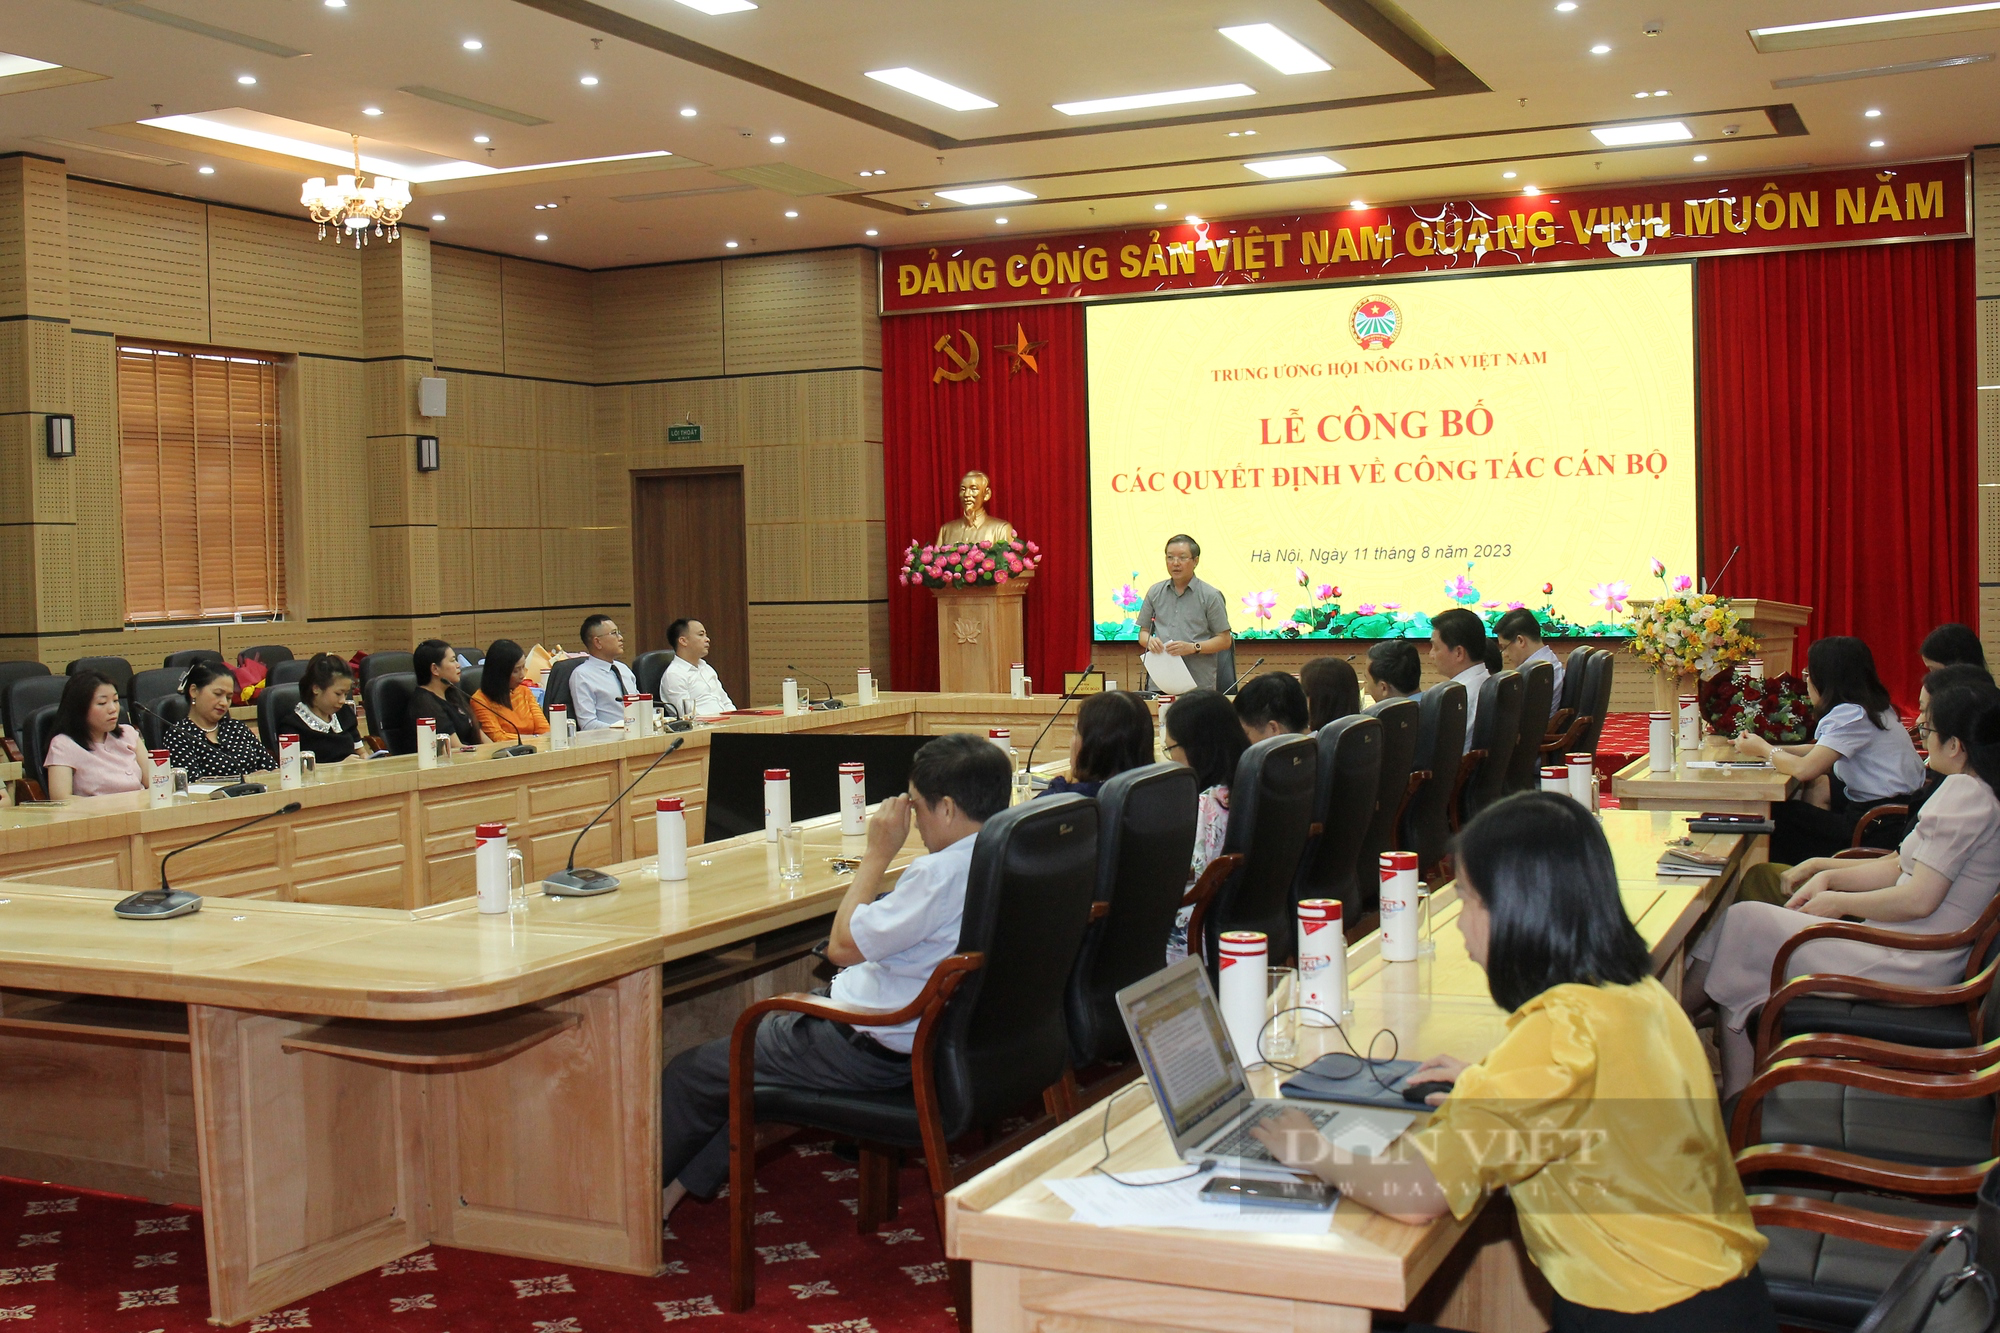 Chủ tịch Hội Nông dân Việt Nam Lương Quốc Đoàn trao các quyết định về công tác cán bộ - Ảnh 3.